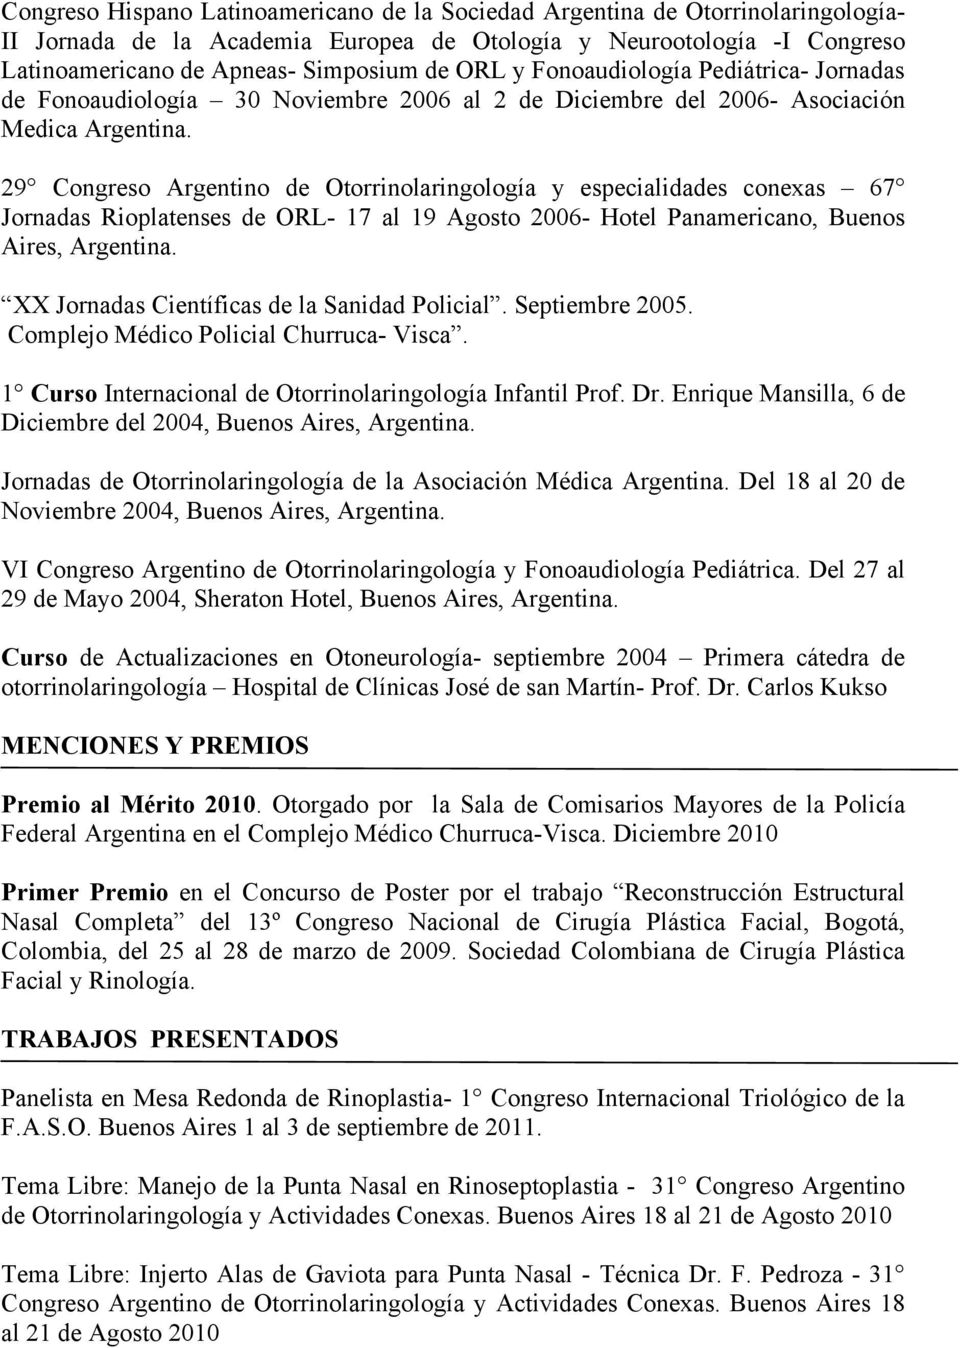 29 Congreso Argentino de Otorrinolaringología y especialidades conexas 67 Jornadas Rioplatenses de ORL- 17 al 19 Agosto 2006- Hotel Panamericano, Buenos Aires, Argentina.